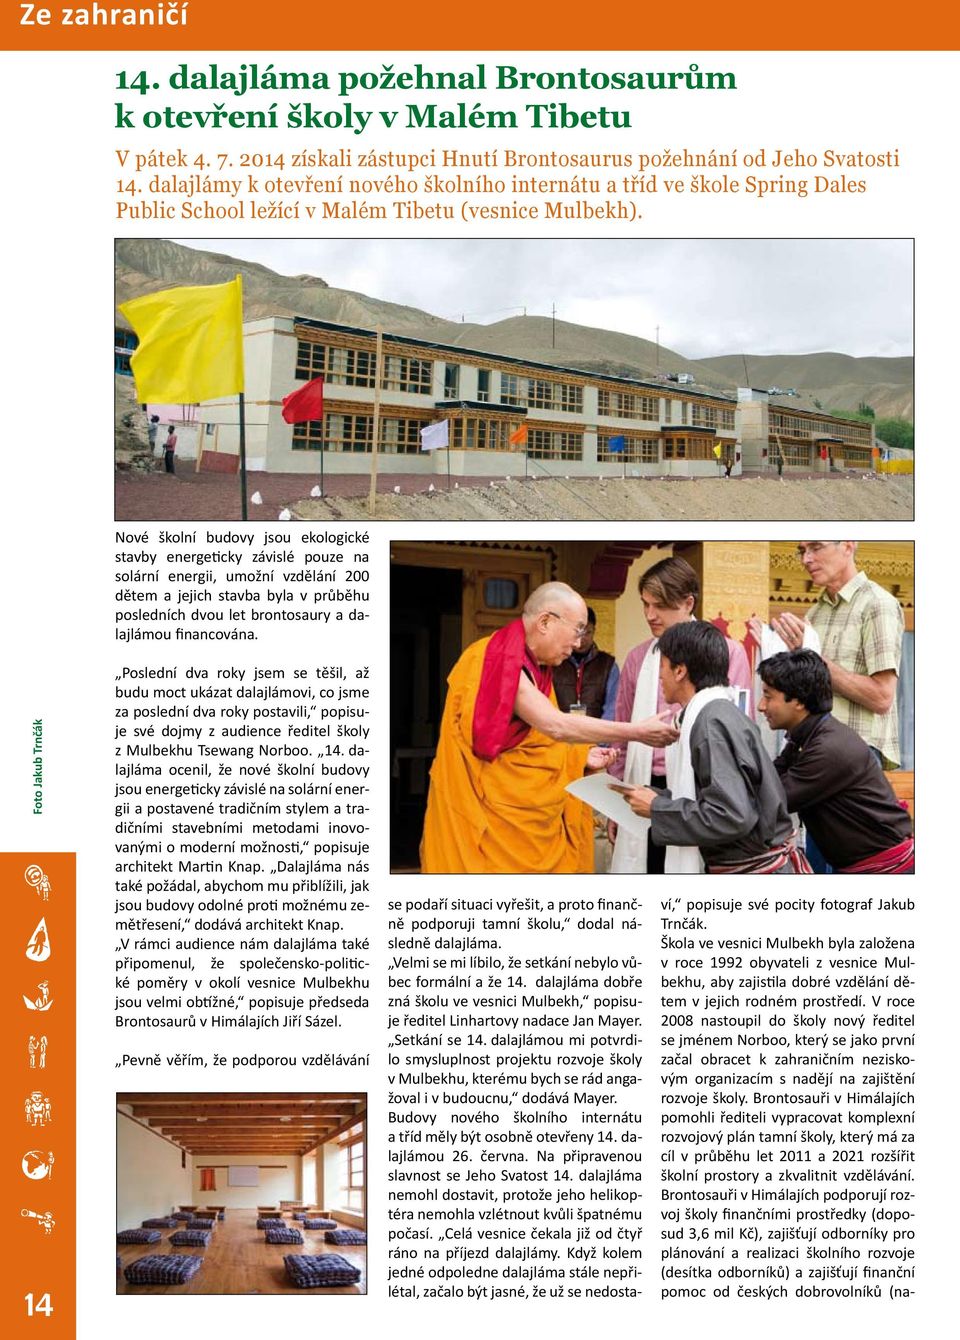 Nové školní budovy jsou ekologické stavby energeticky závislé pouze na solární energii, umožní vzdělání 200 dětem a jejich stavba byla v průběhu posledních dvou let brontosaury a dalajlámou